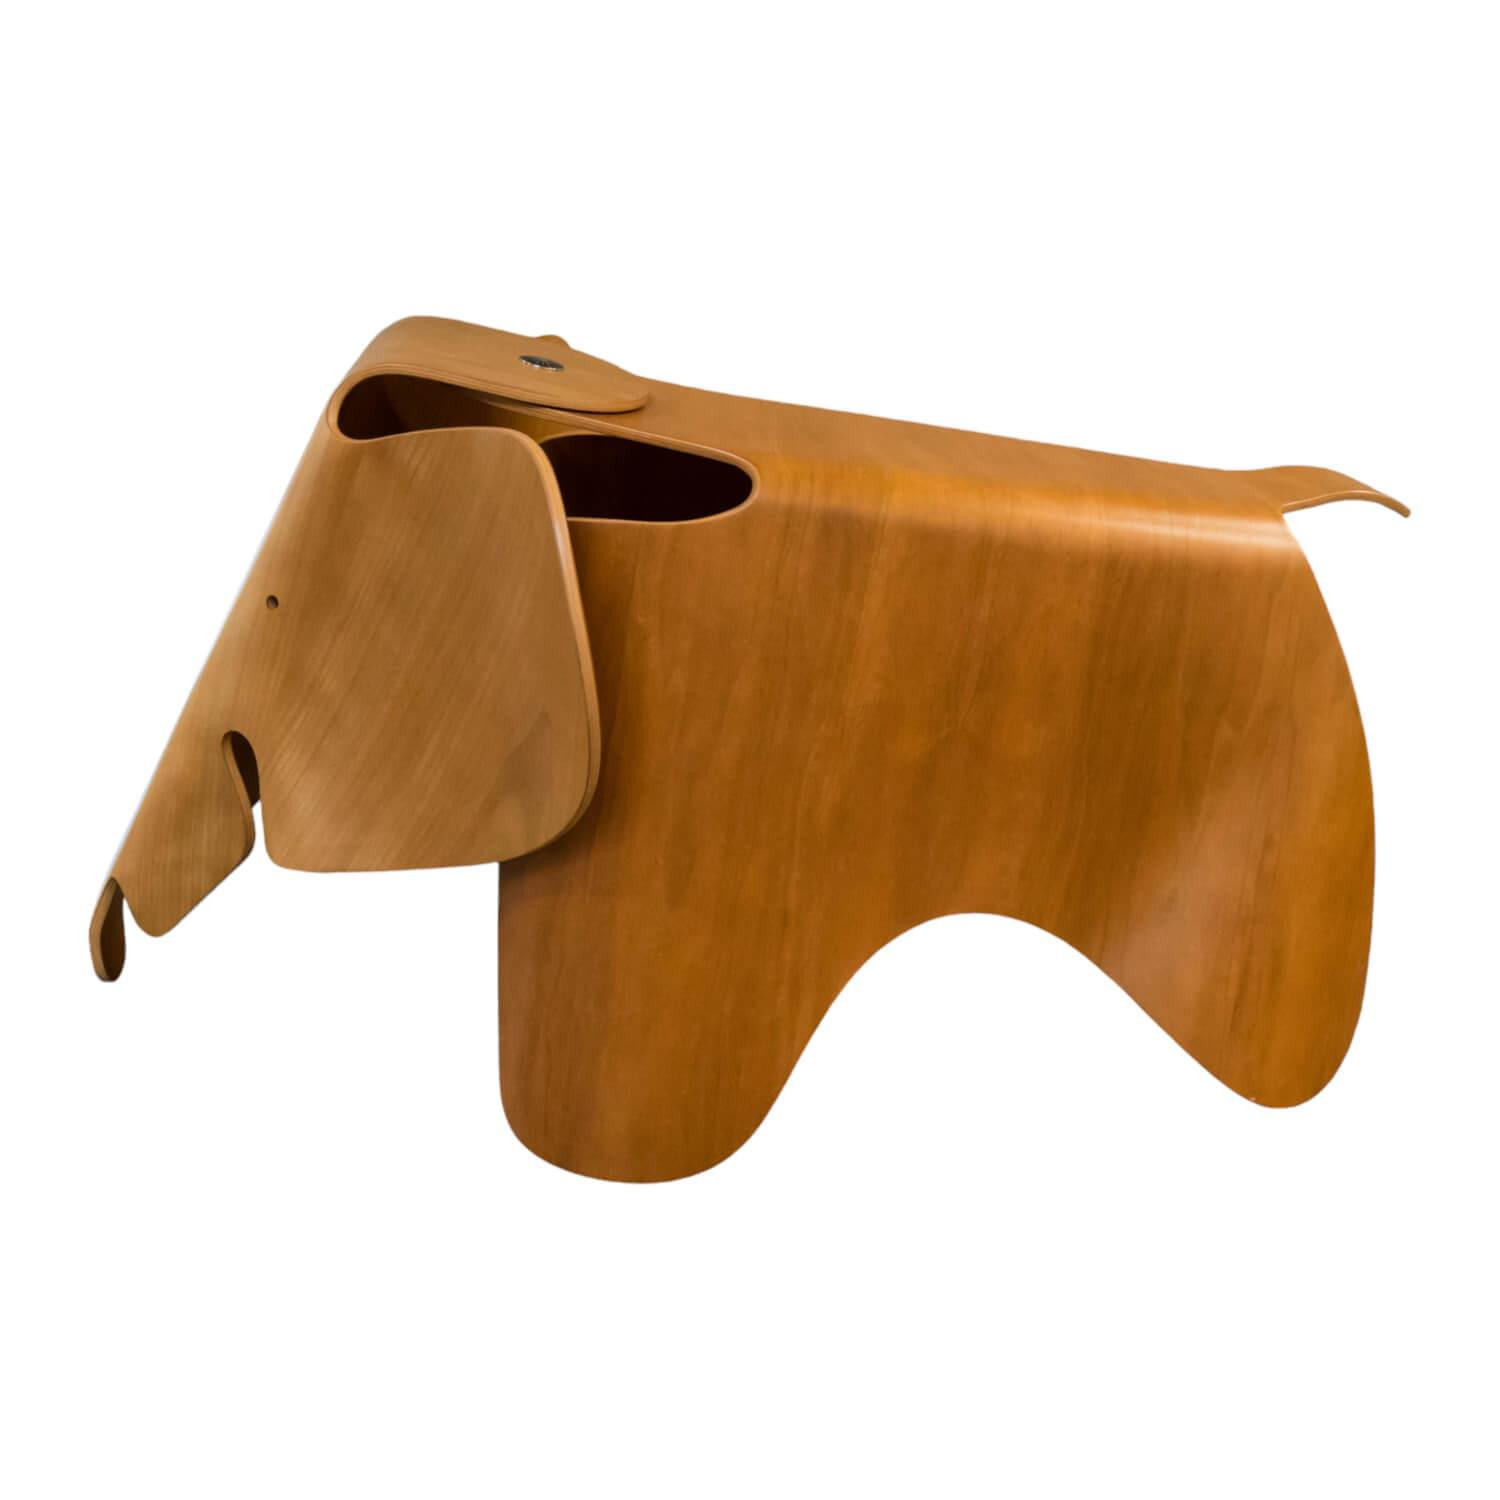 Elephant Eames Plywood Amerikanischer Nussbaum Braun